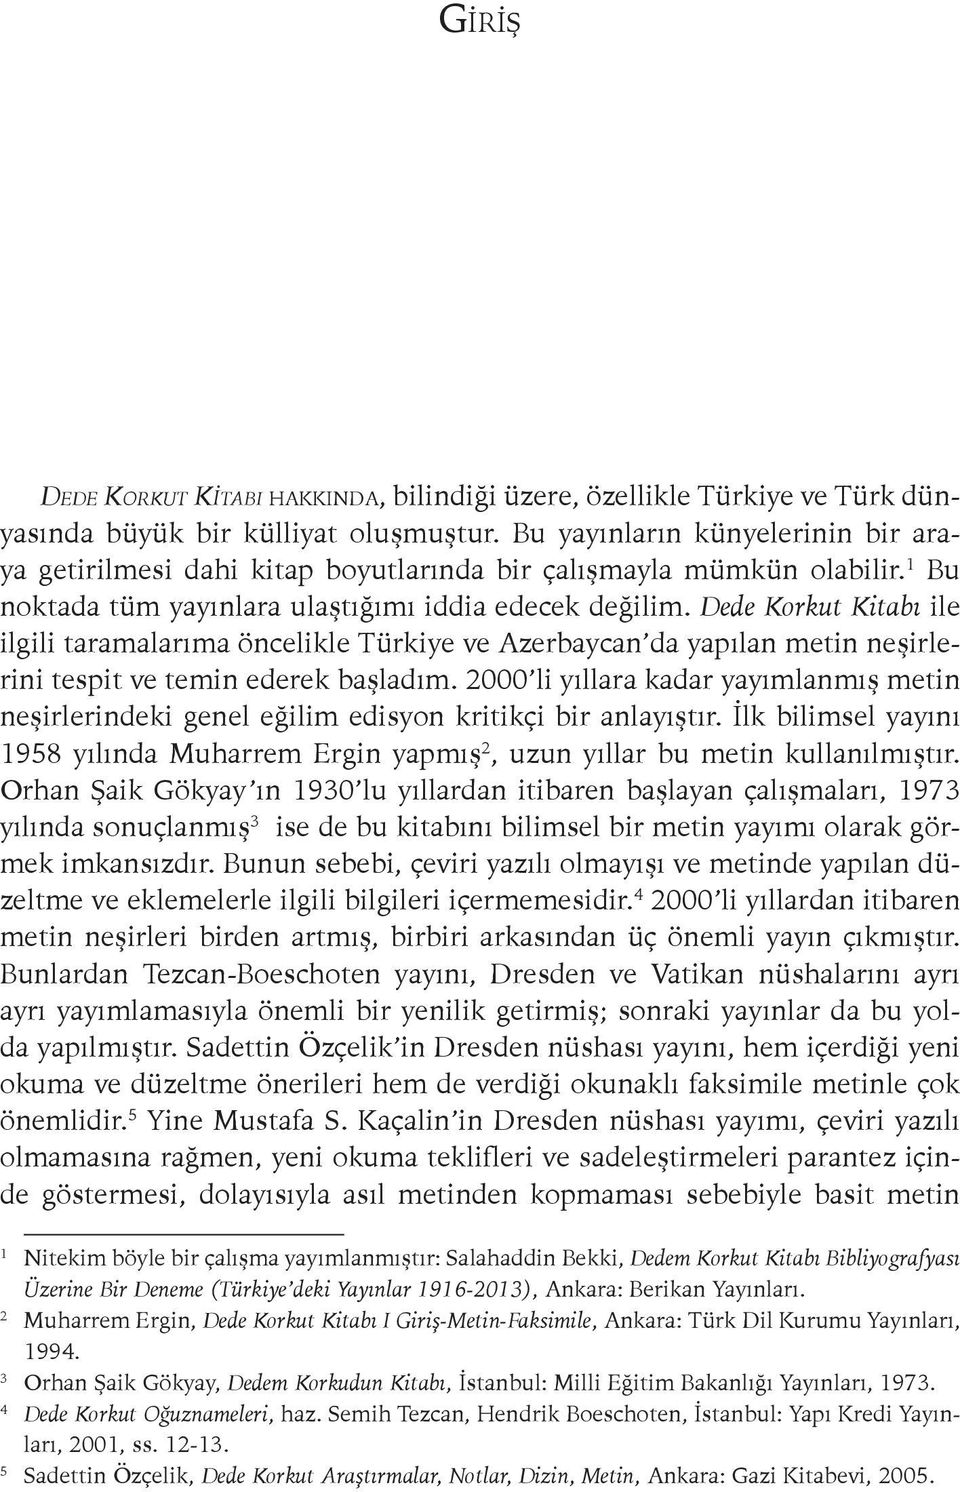 Dede Korkut Kitabı ile ilgili taramalarıma öncelikle Türkiye ve Azerbaycan da yapılan metin neşirlerini tespit ve temin ederek başladım.